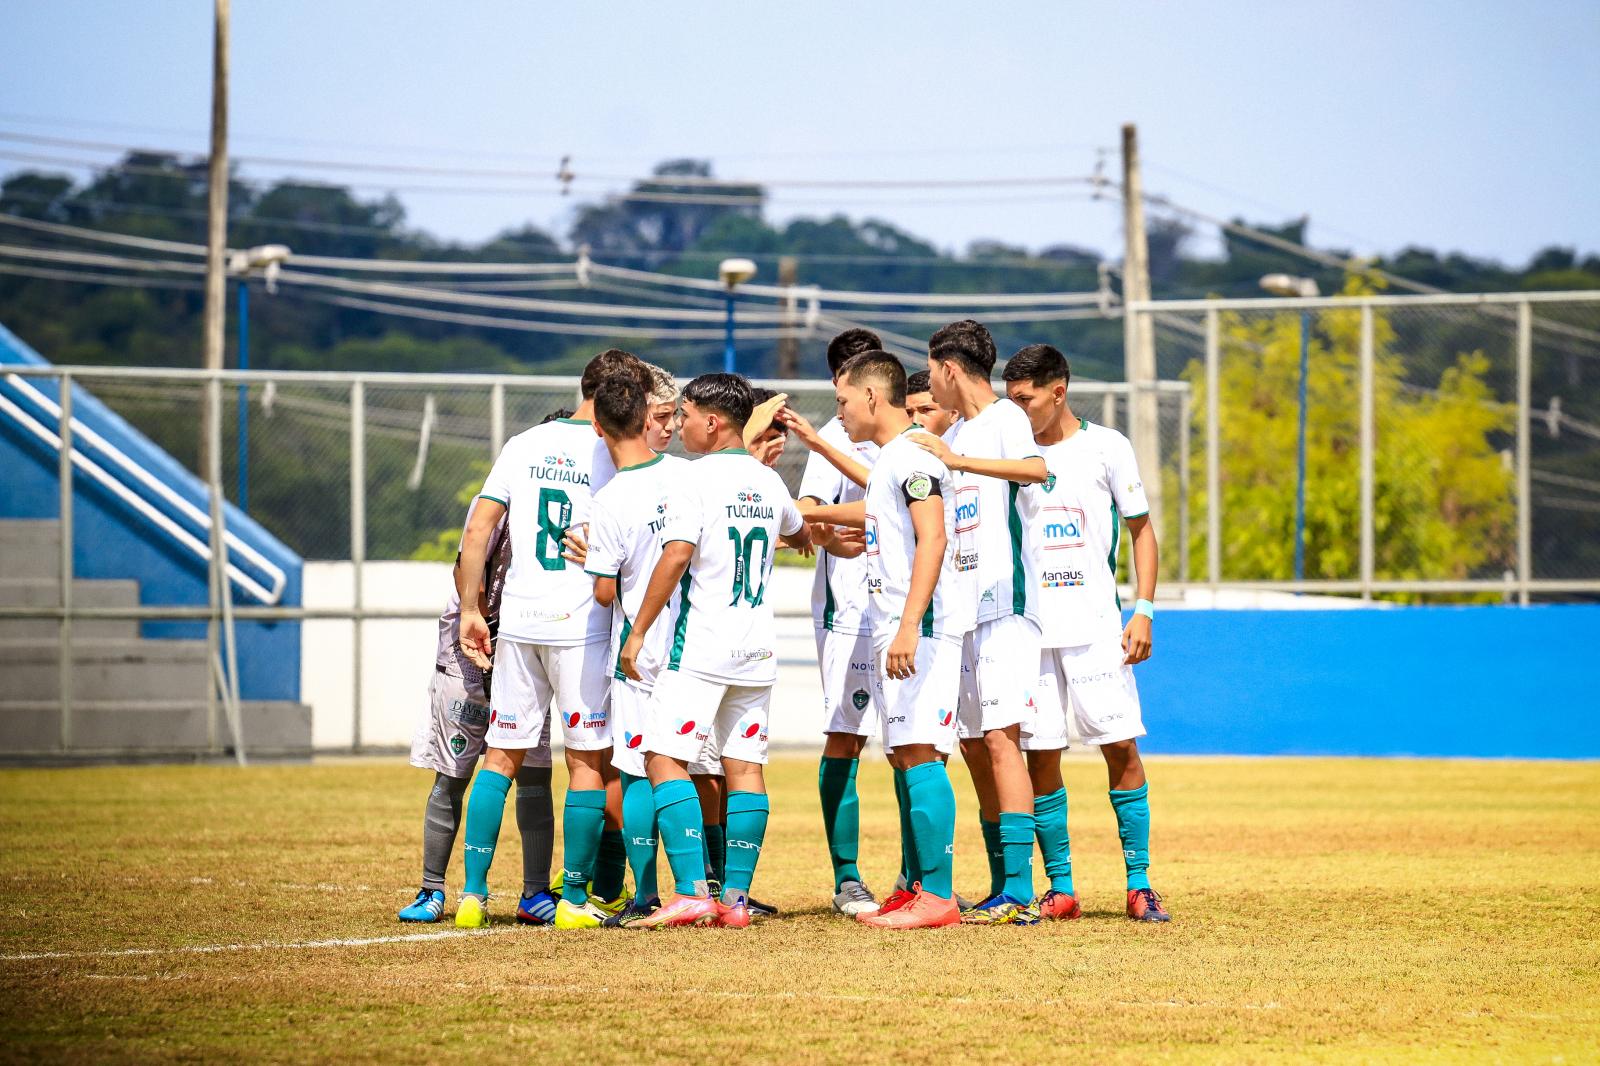 Manaus FC e Nacional fazem confronto direto no Amazonense Sub-16